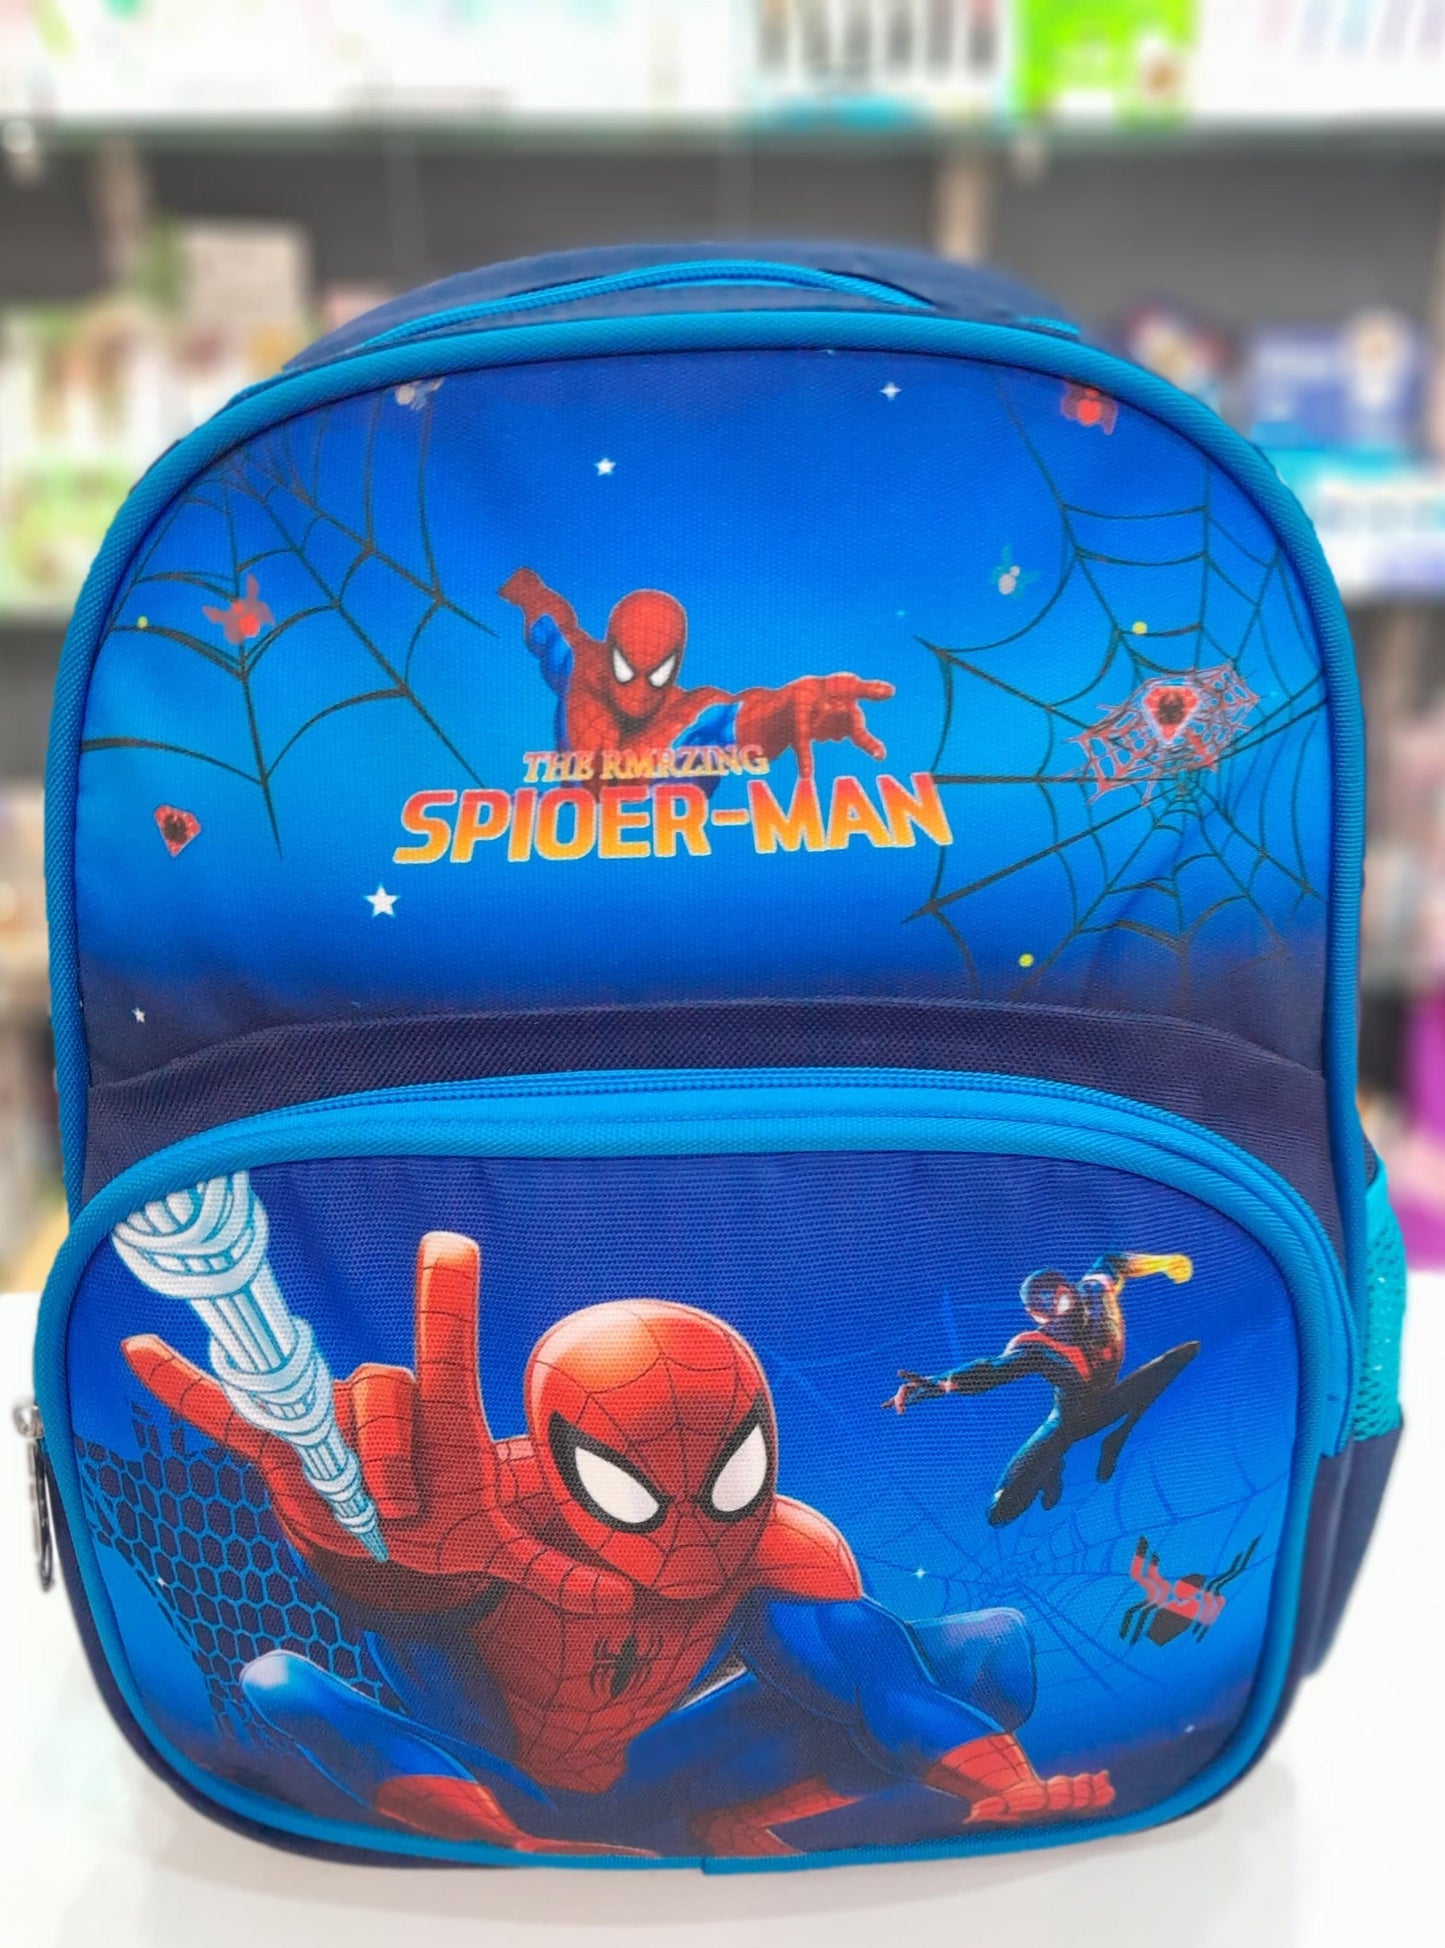 Spider-Man Bag